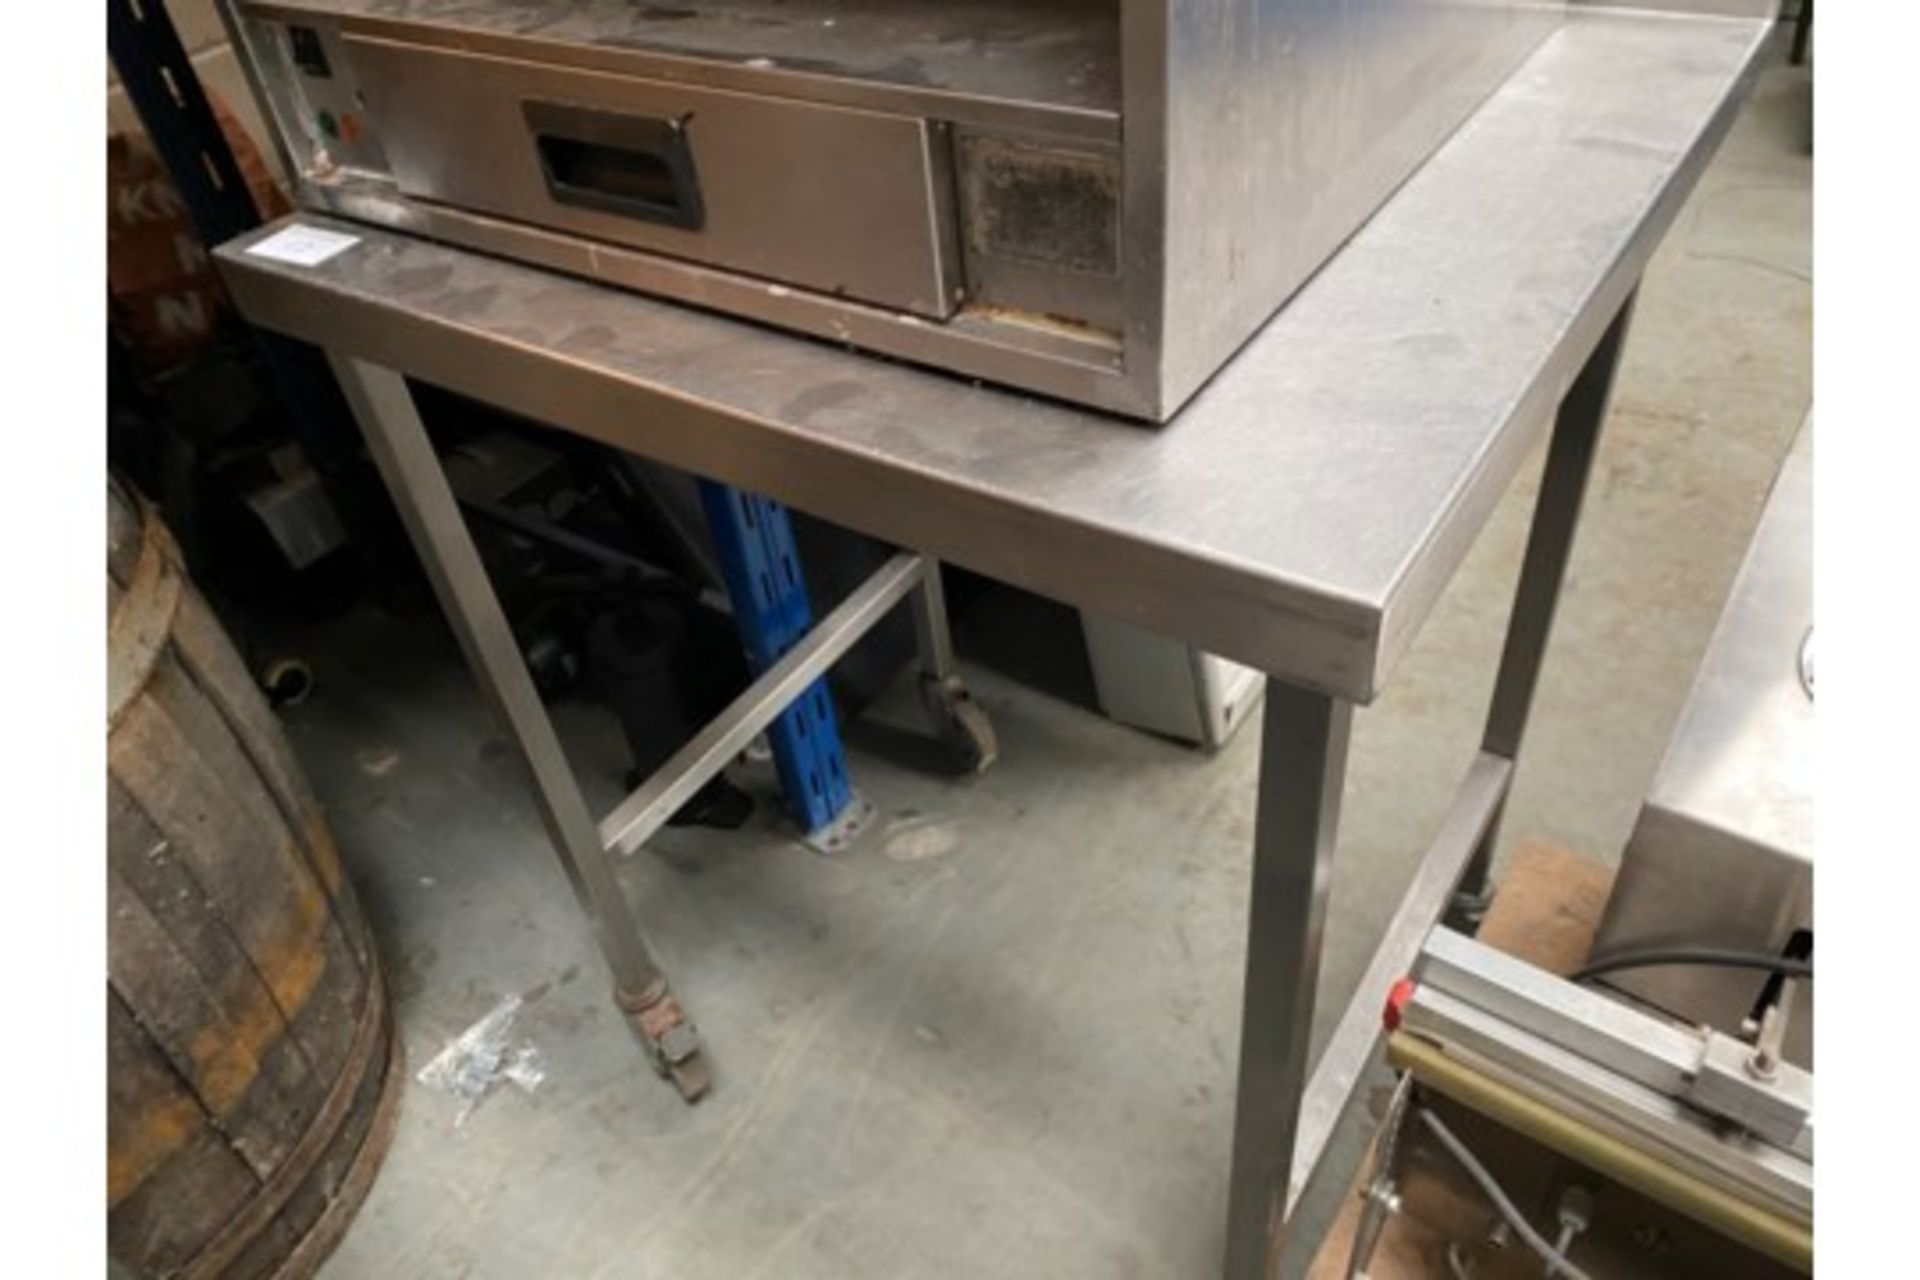 Stainless Steel Prep Table On Wheels